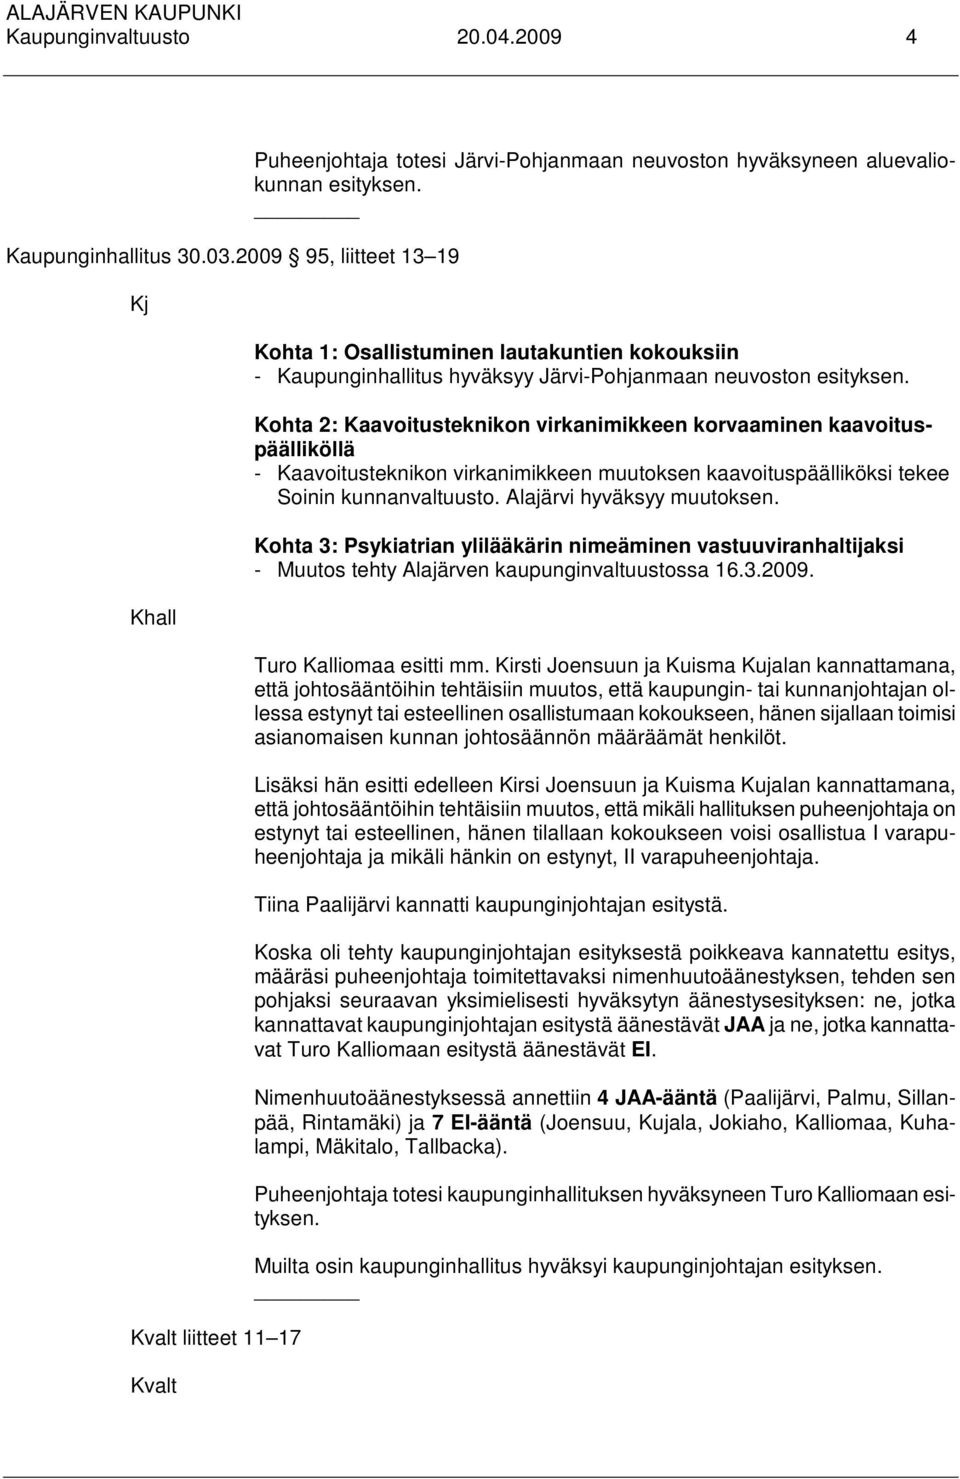 Kohta 1: Osallistuminen lautakuntien kokouksiin - Kaupunginhallitus hyväksyy Järvi-Pohjanmaan neuvoston esityksen.